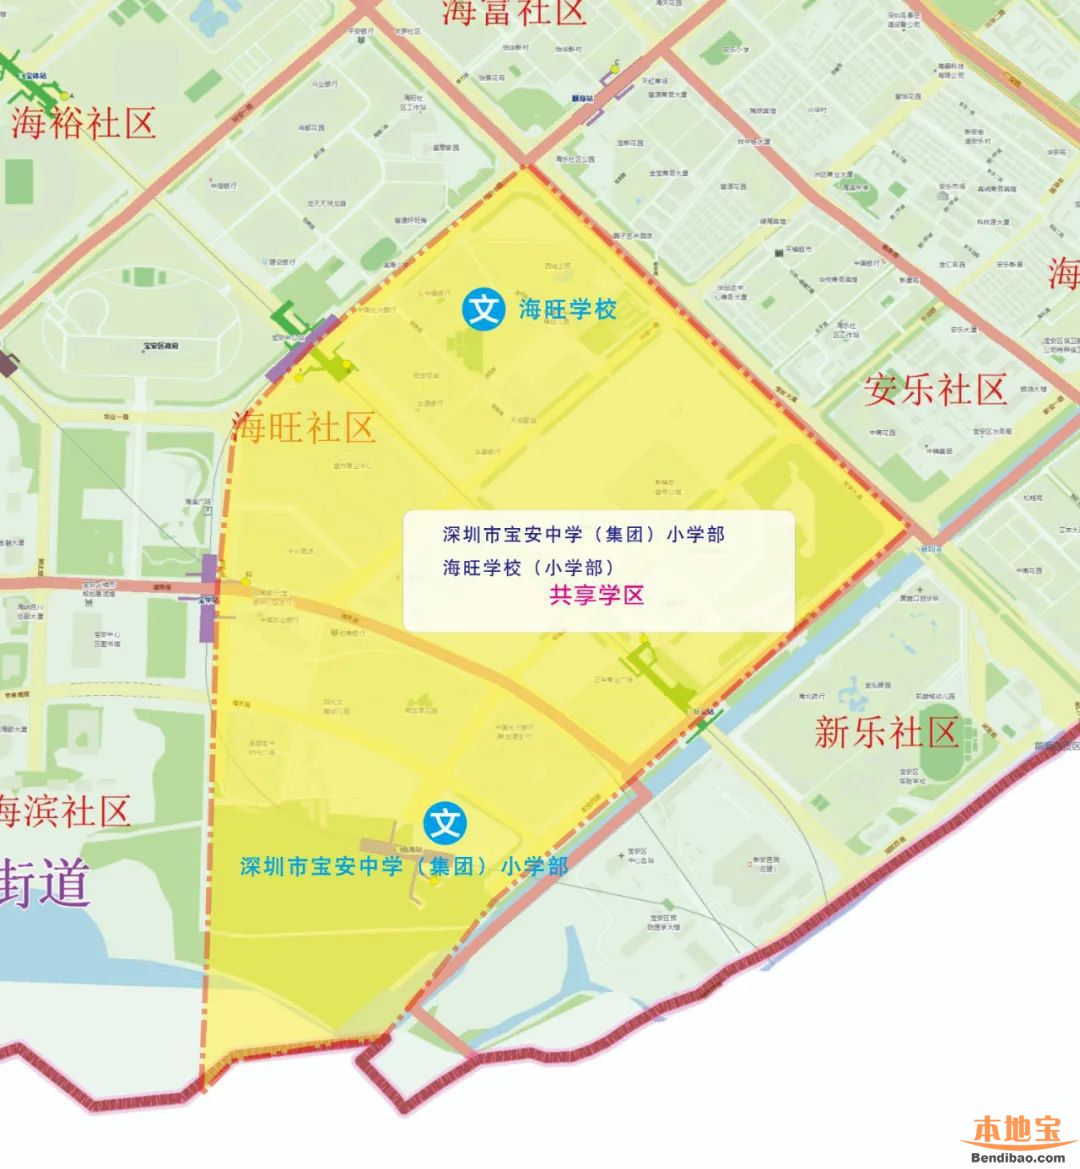 2022年宝安区新开办公办学校学区划分图汇总